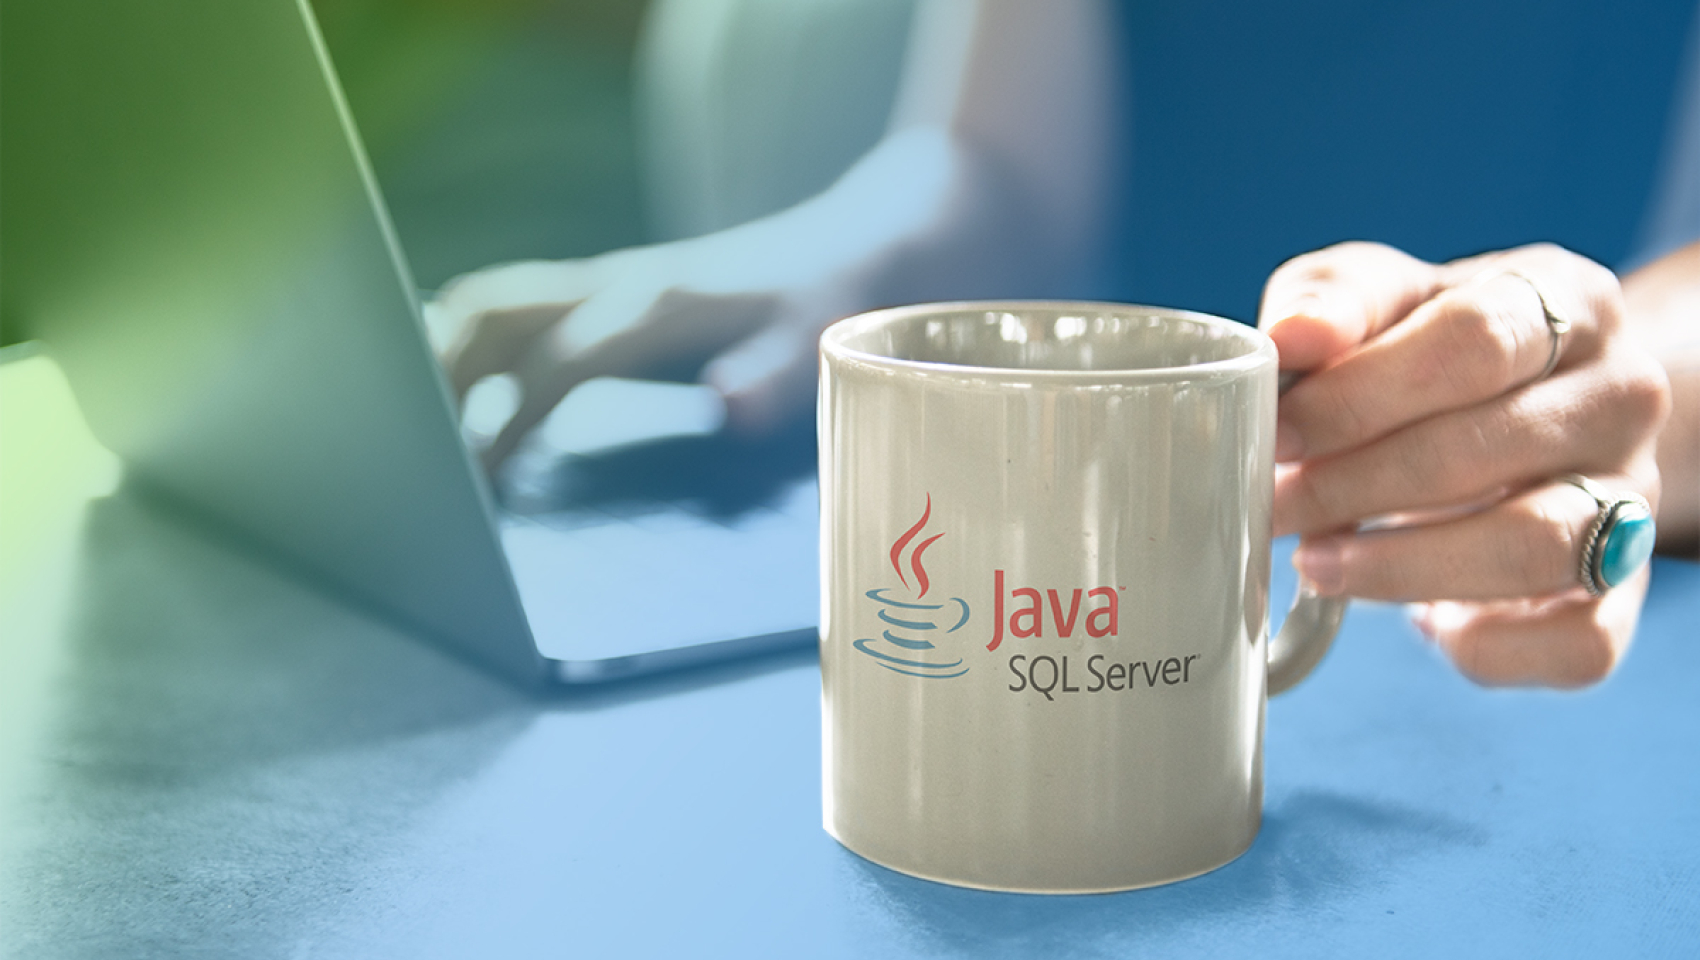 Мастер-класс «Как в Java работать с SQL и NoSQL базами данных» в Киеве